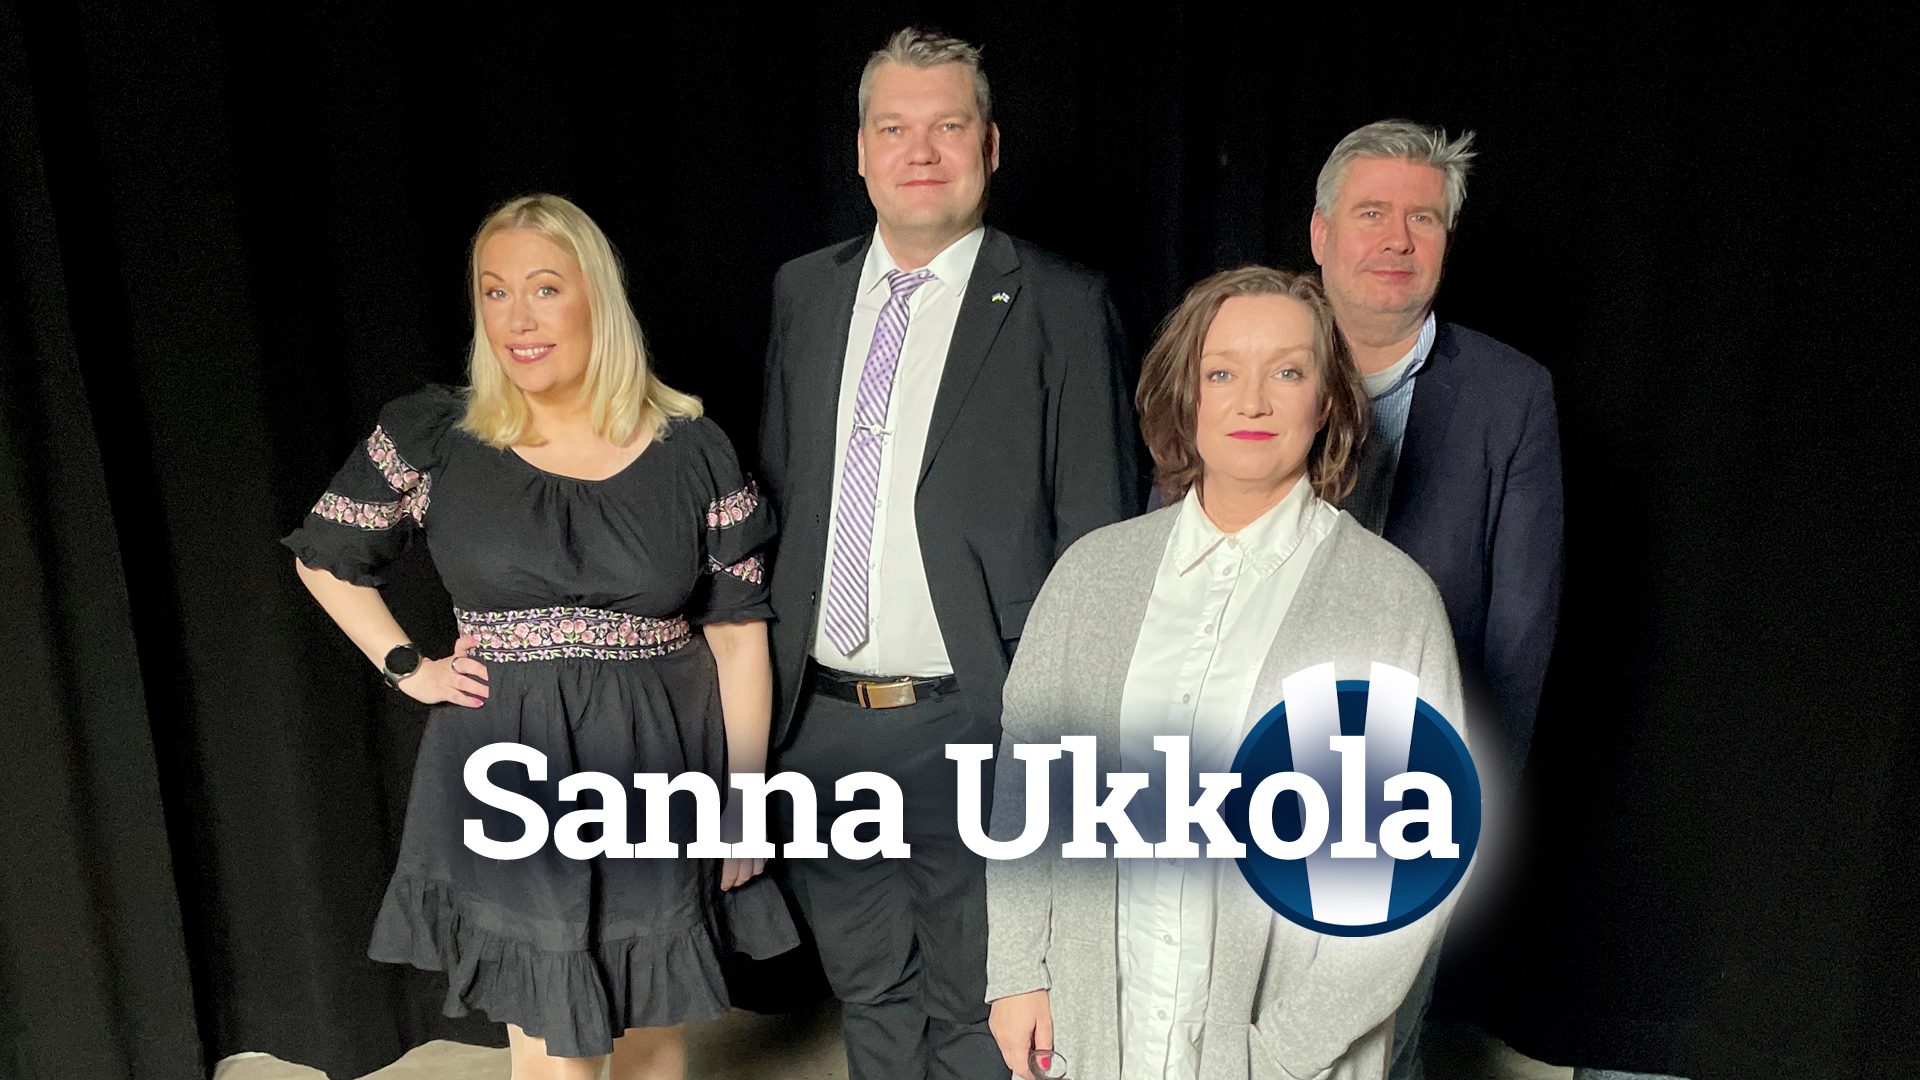 Sanna Ukkola Show: Tältä näyttää presidentinvaalin loppukiri | Verkkouutiset